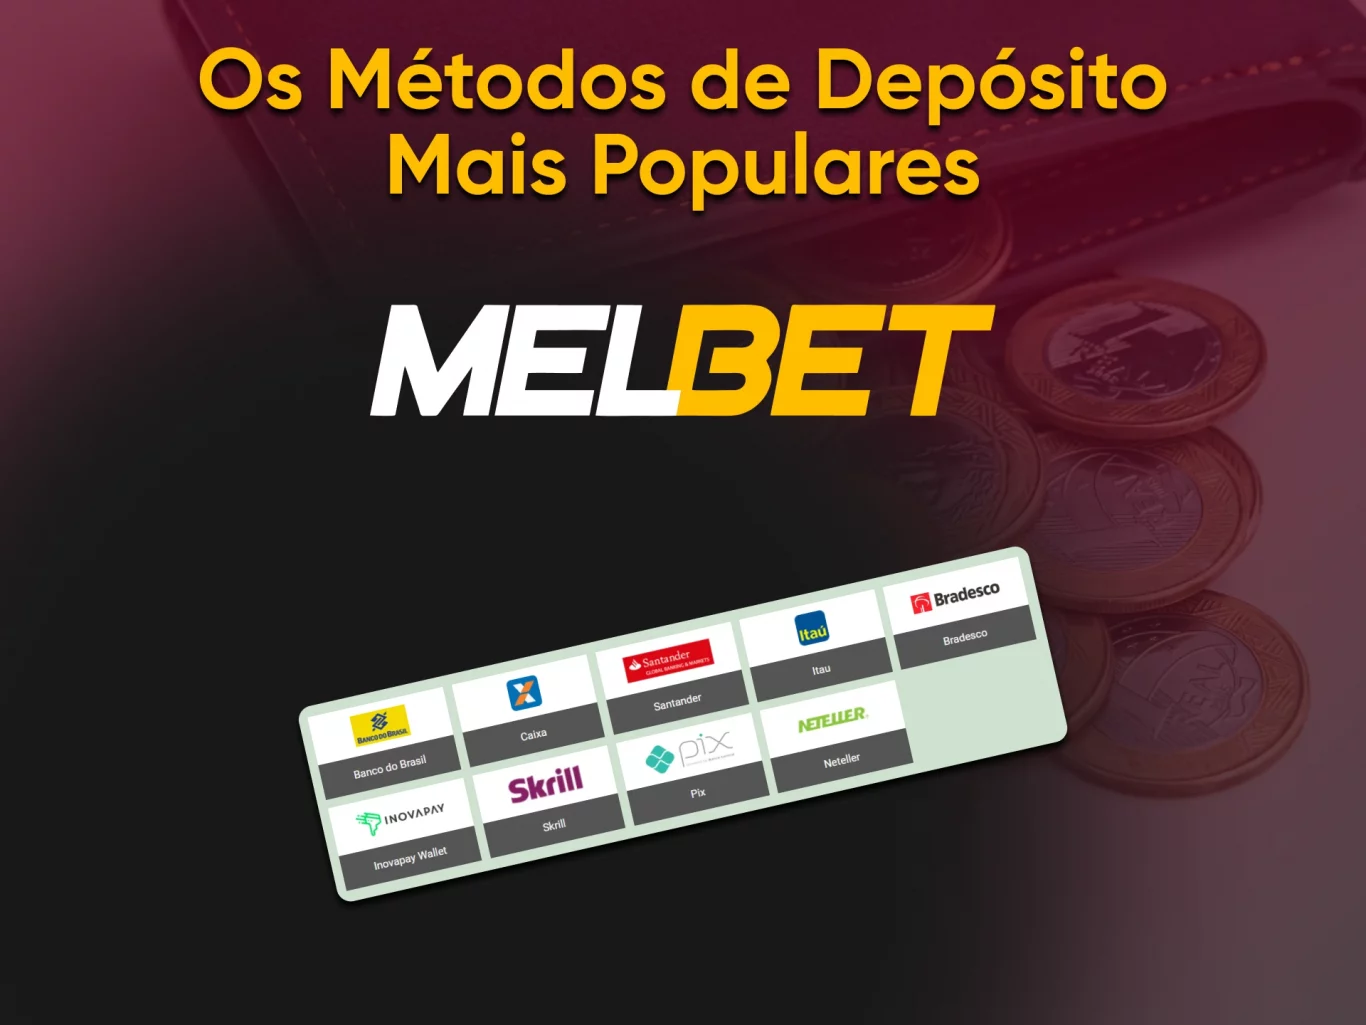 ¿Qué Melbet métodos de depósito están disponibles para los usuarios?